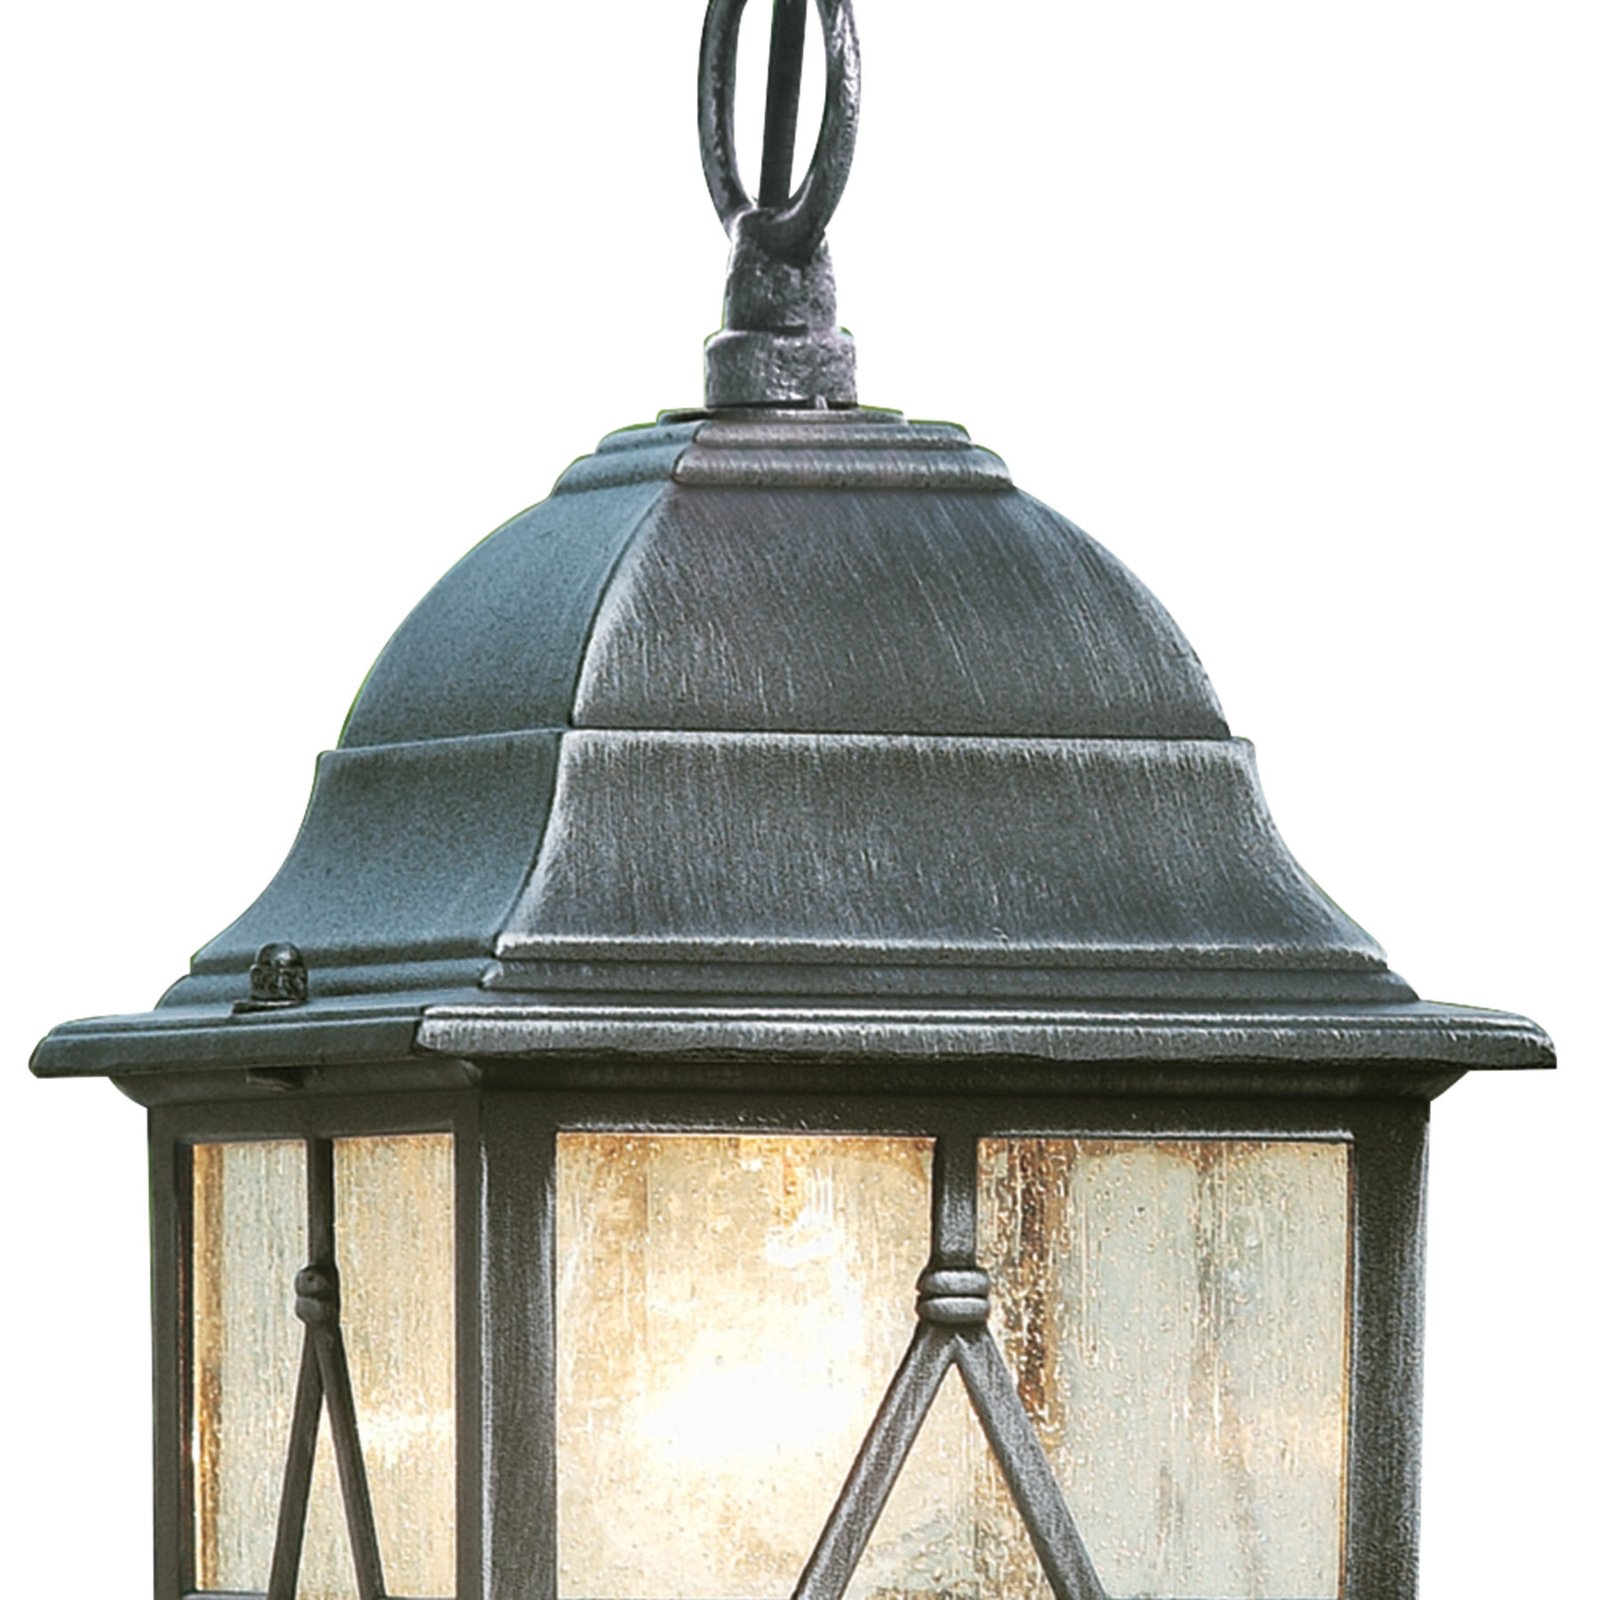 Zunanja viseča svetilka Genoa s svinčenim steklom